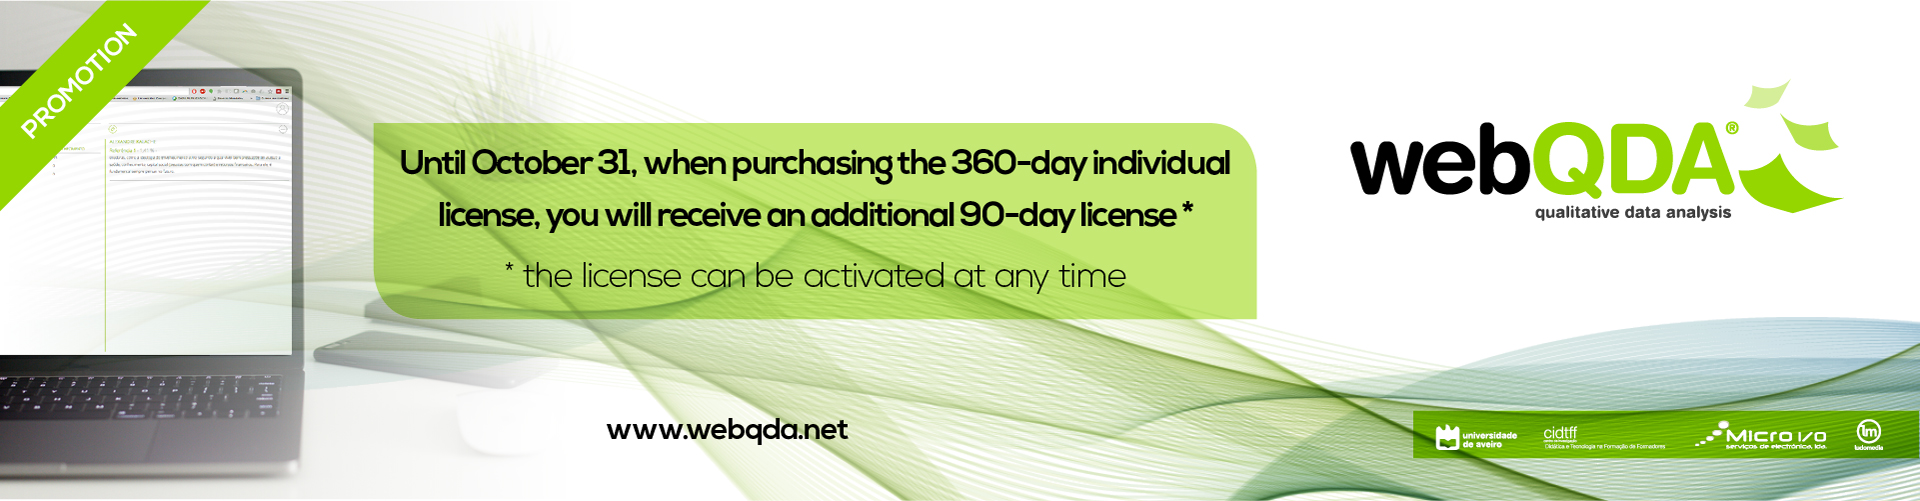 360 Day License Promotion webQDA